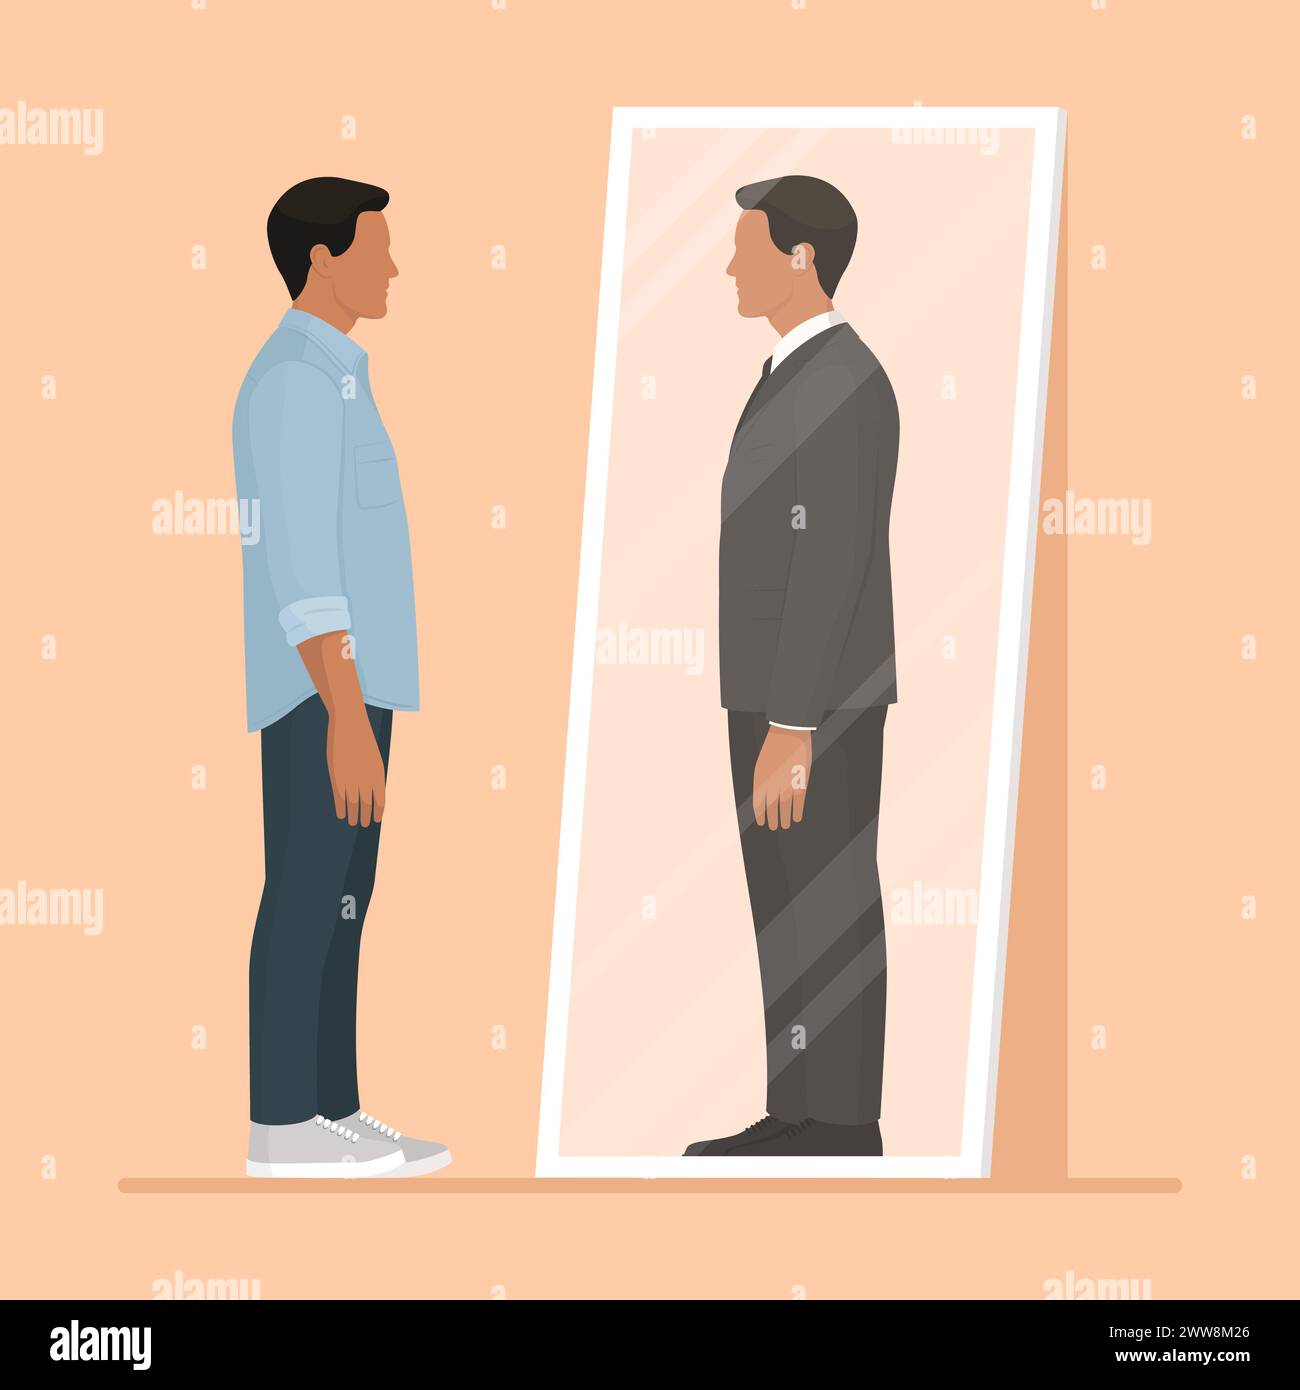 Mann, der in den Spiegel blickt und sich als erfolgreicher Geschäftsmann sieht: Karriere, Identität und Bestrebungen Stock Vektor